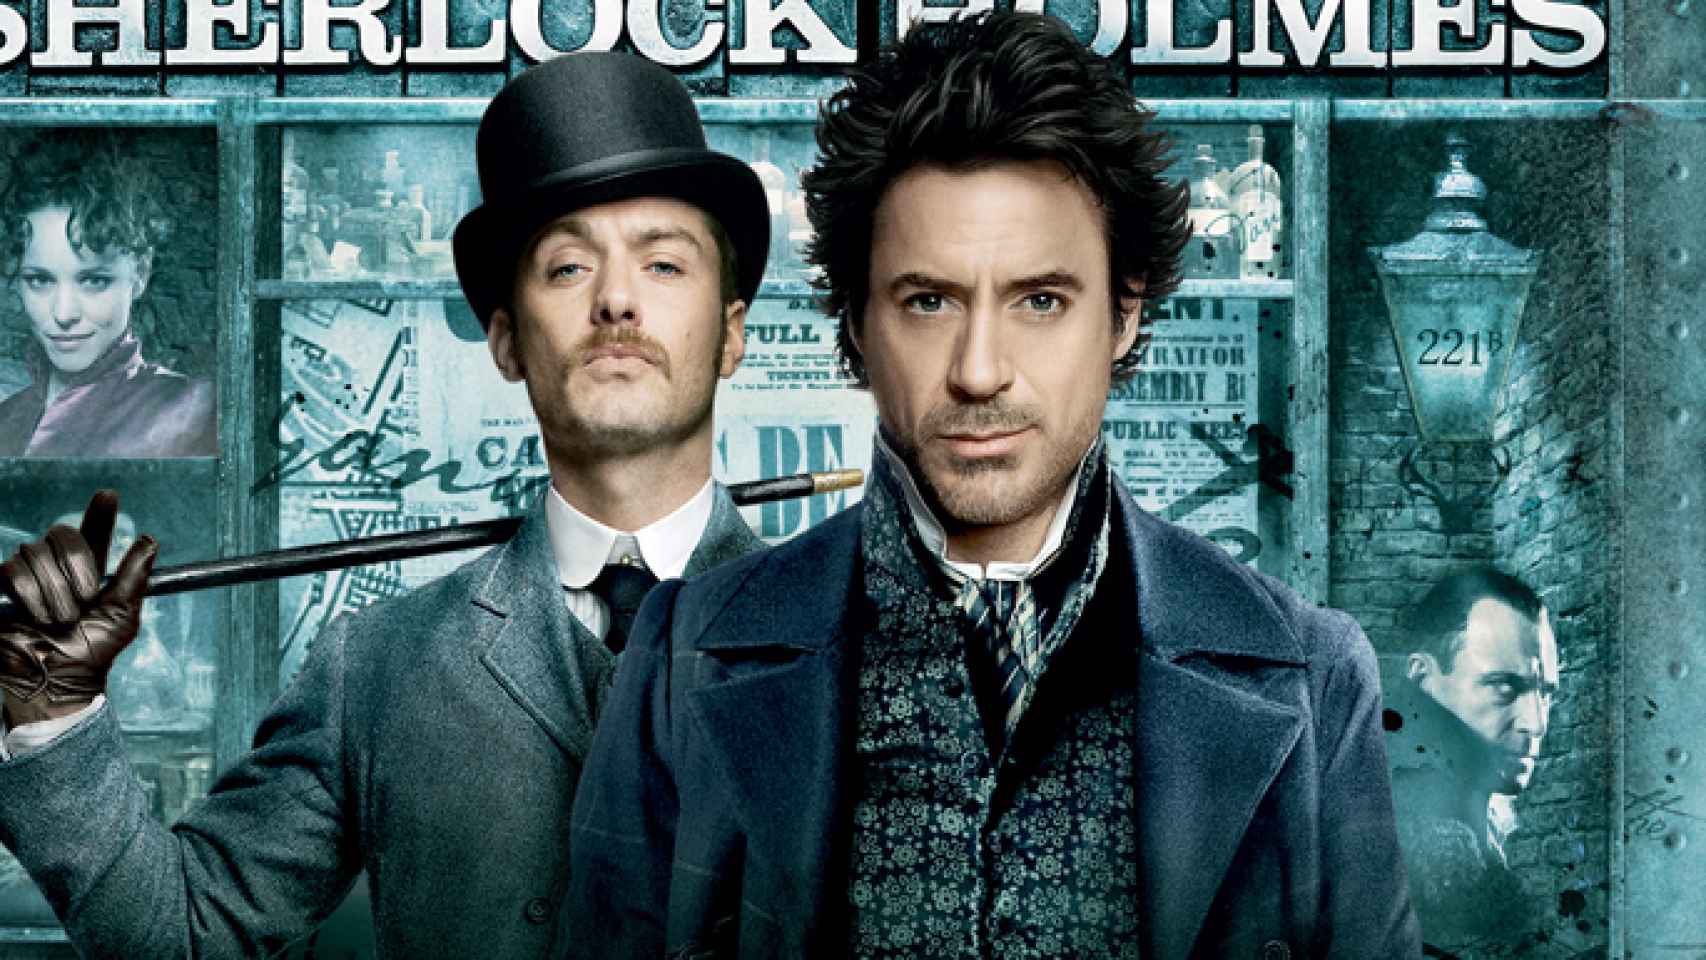 Jude Law y Robert Dawney Jr, protagonistas de 'Sherlock Holmes'